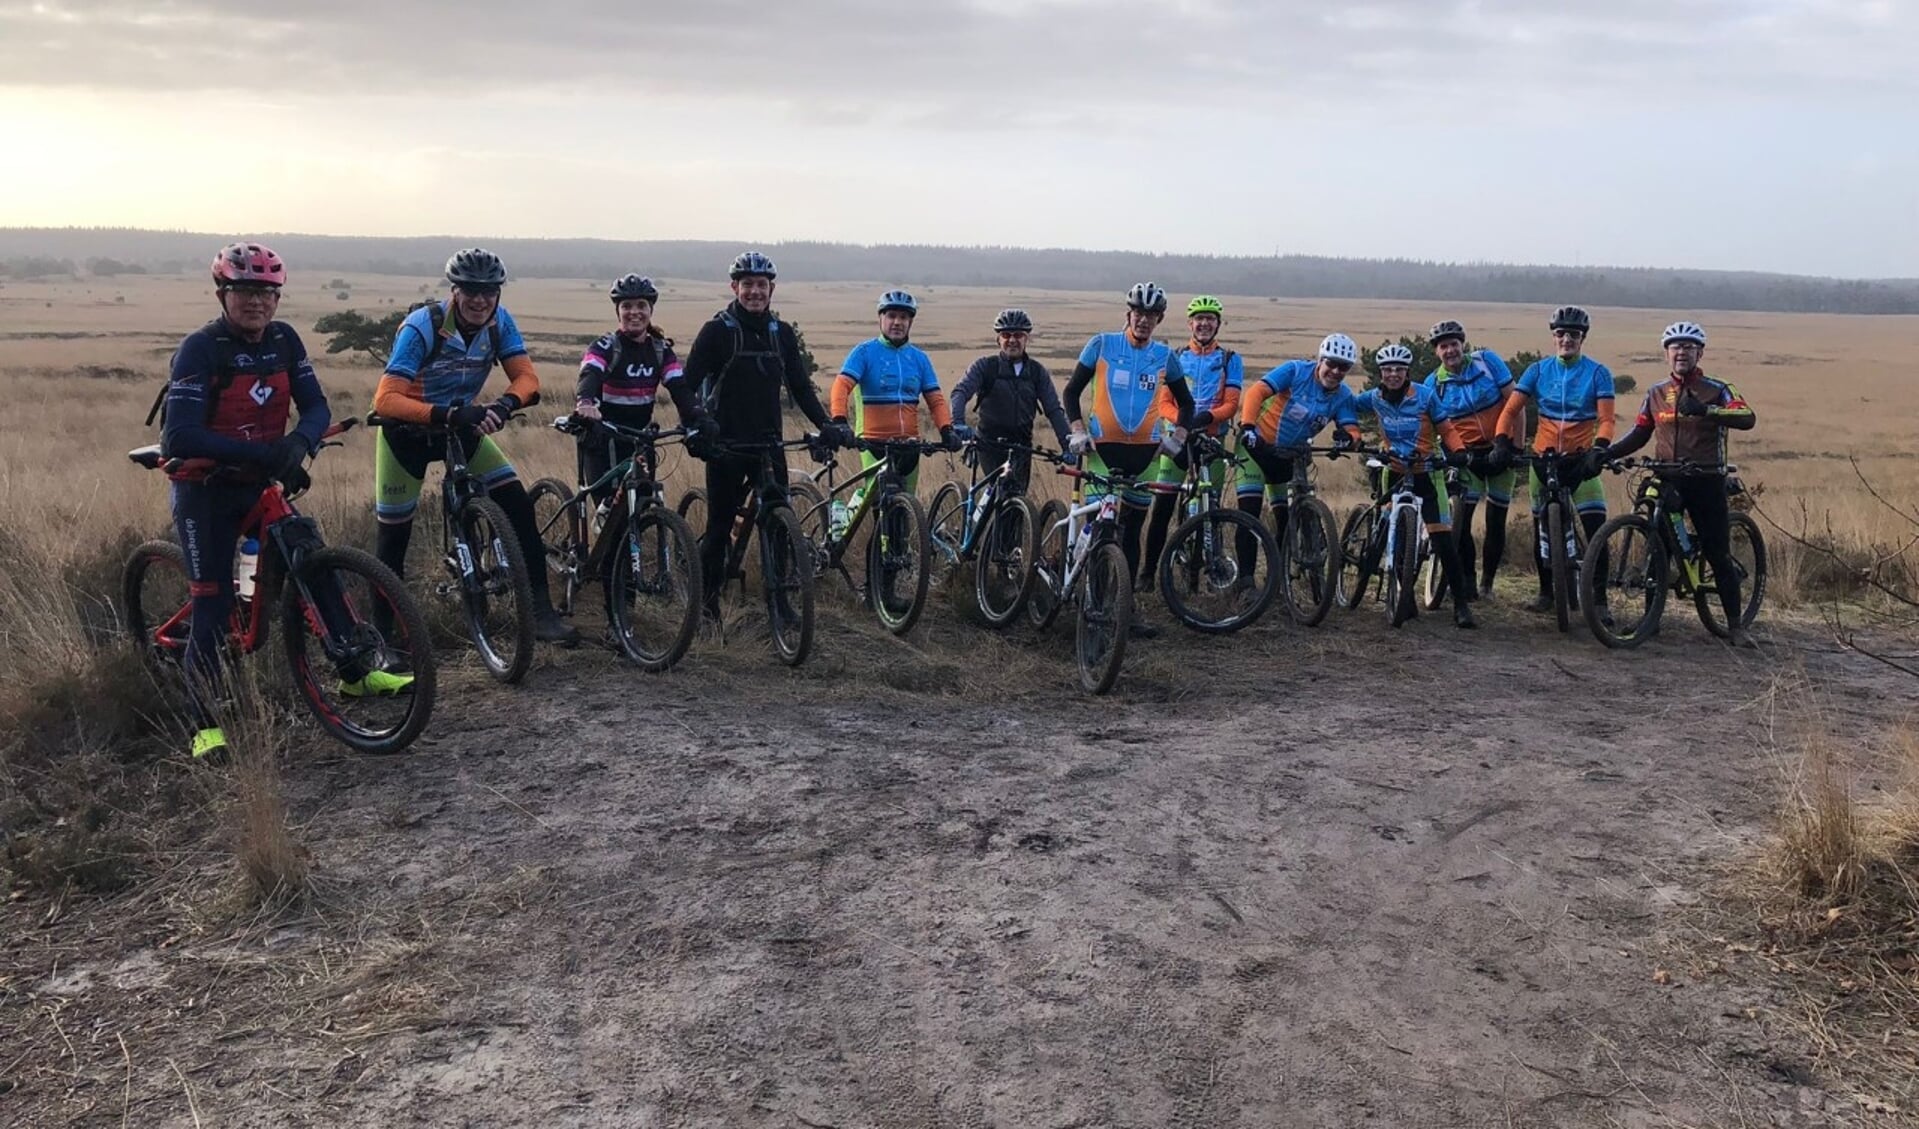 Afgelopen zondag fietsten de teamleden nog een trainingsrondje van 75 kilometer. Er ontbreken een aantal leden op de foto.